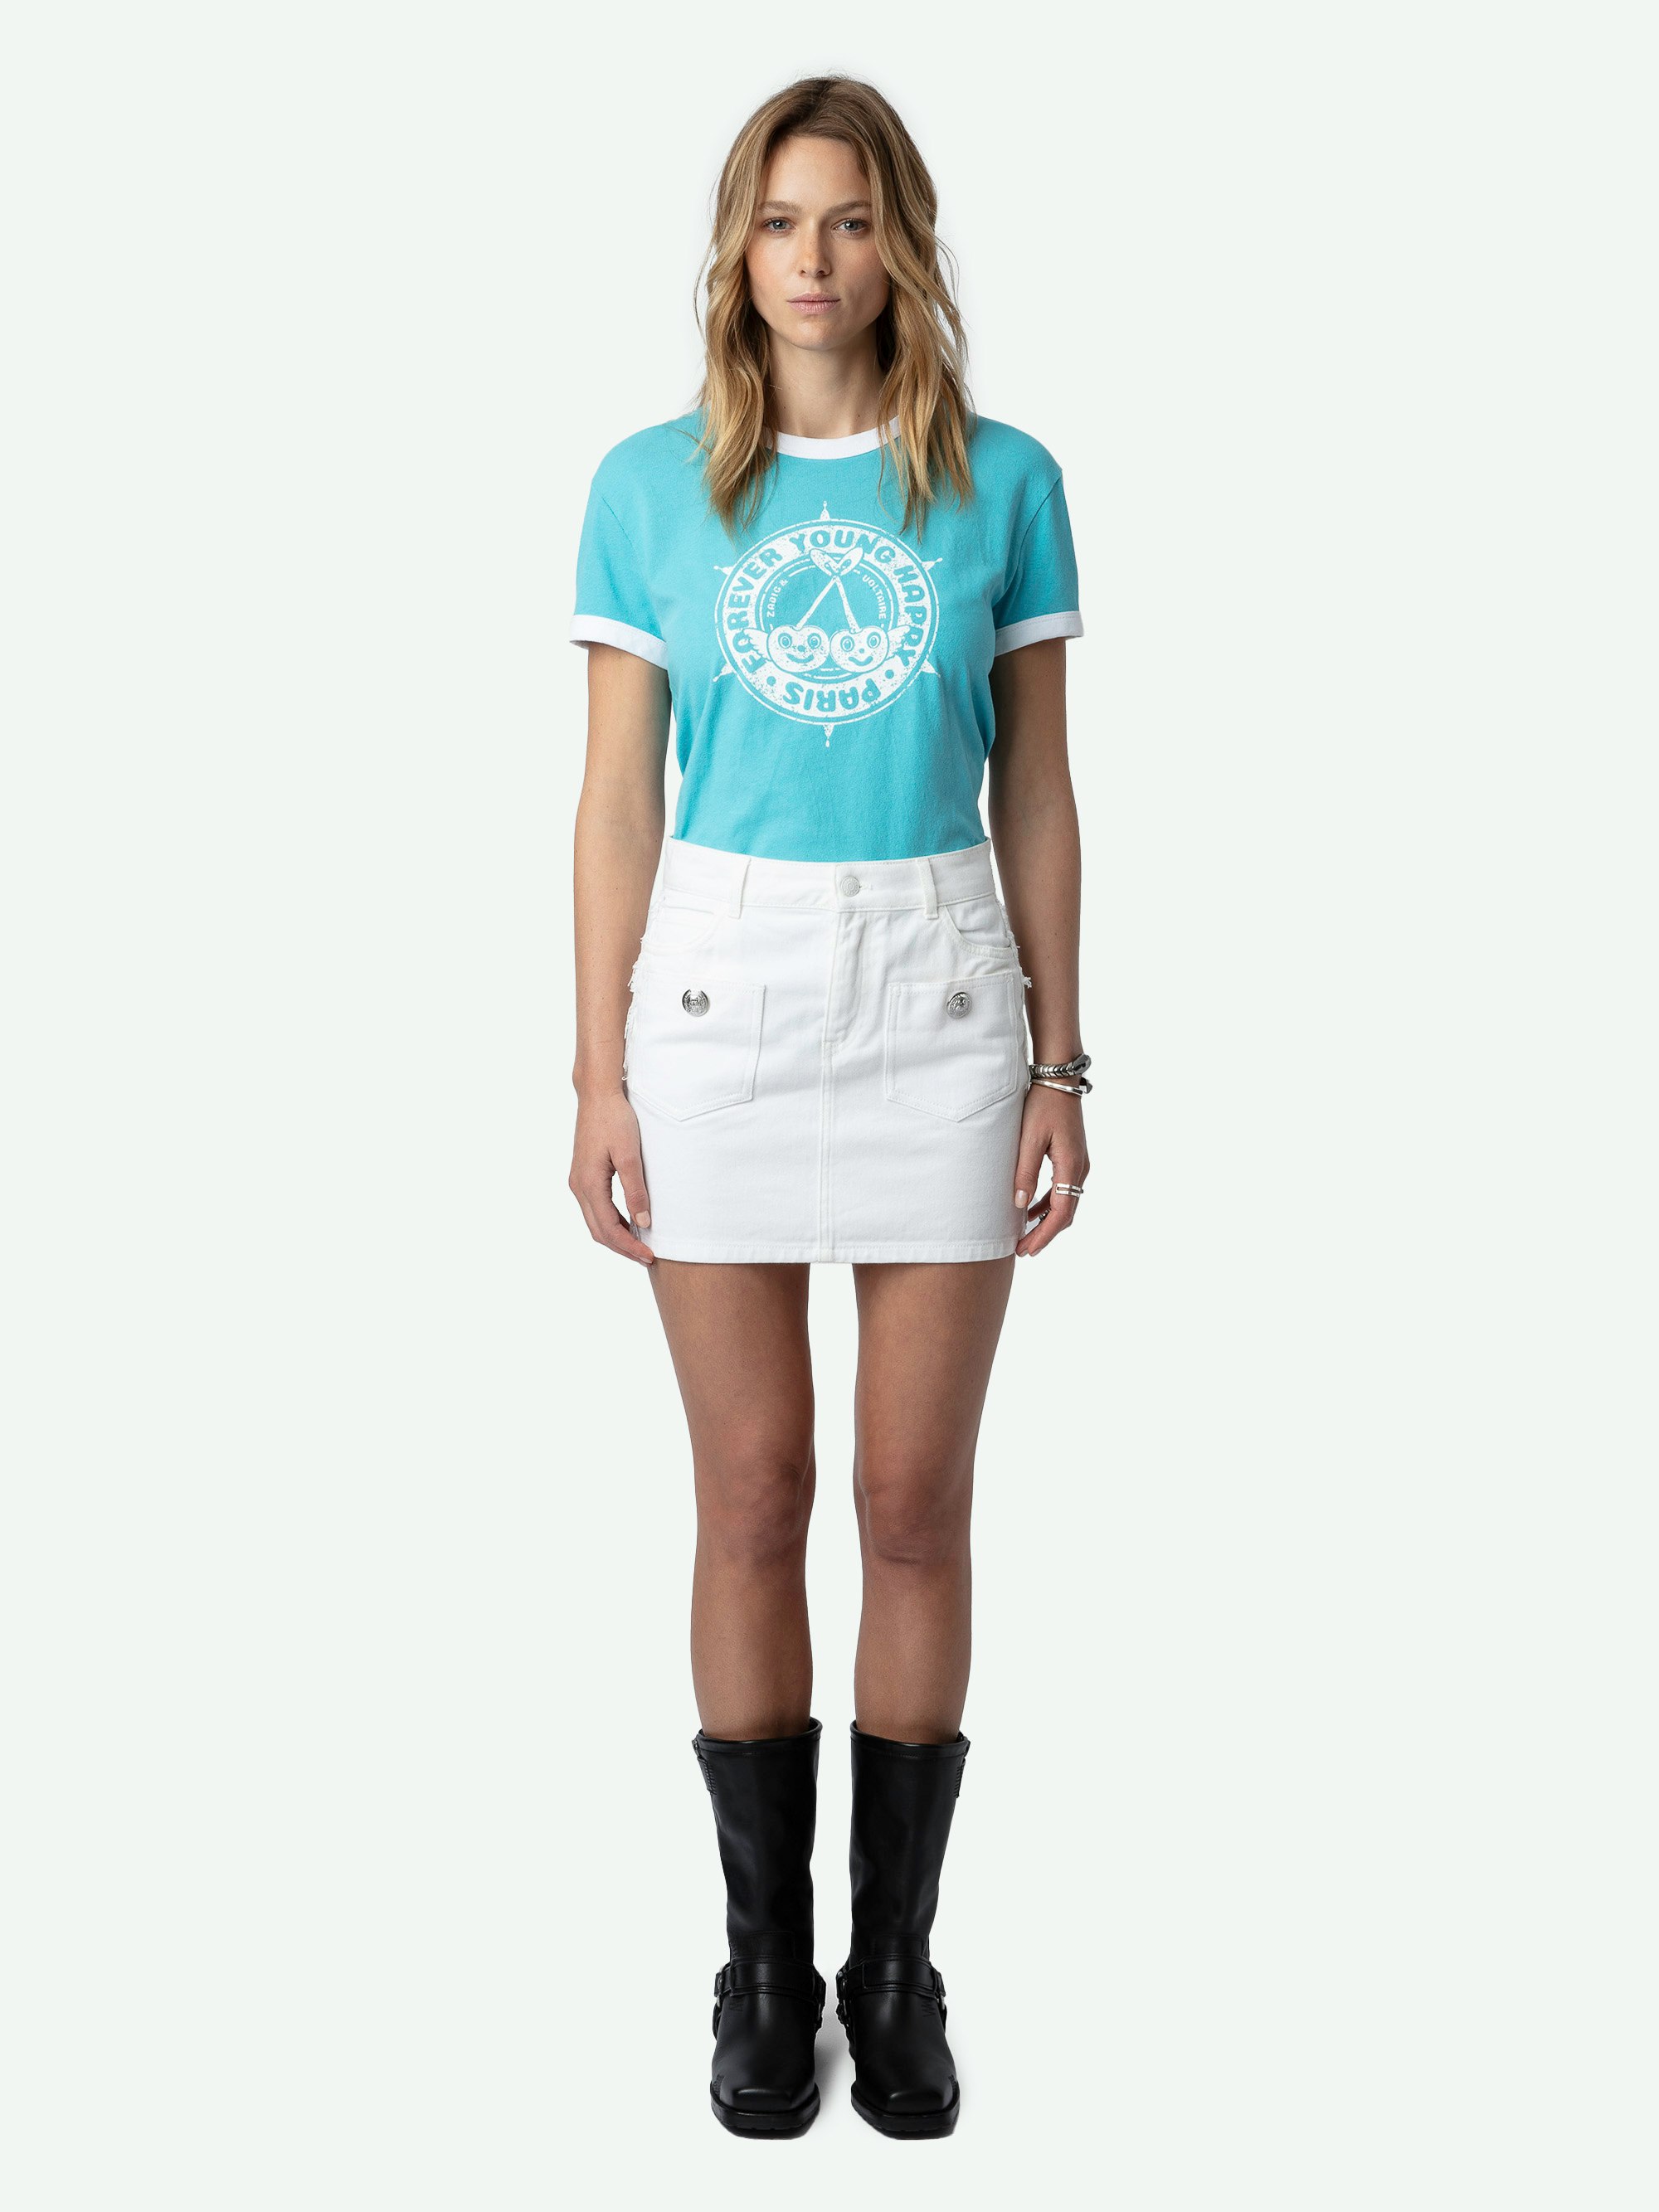 Camiseta Walk con Escudo - Camiseta de algodón ecológico de color azul, de manga corta, con estampado de escudos y cerezas en la parte delantera.